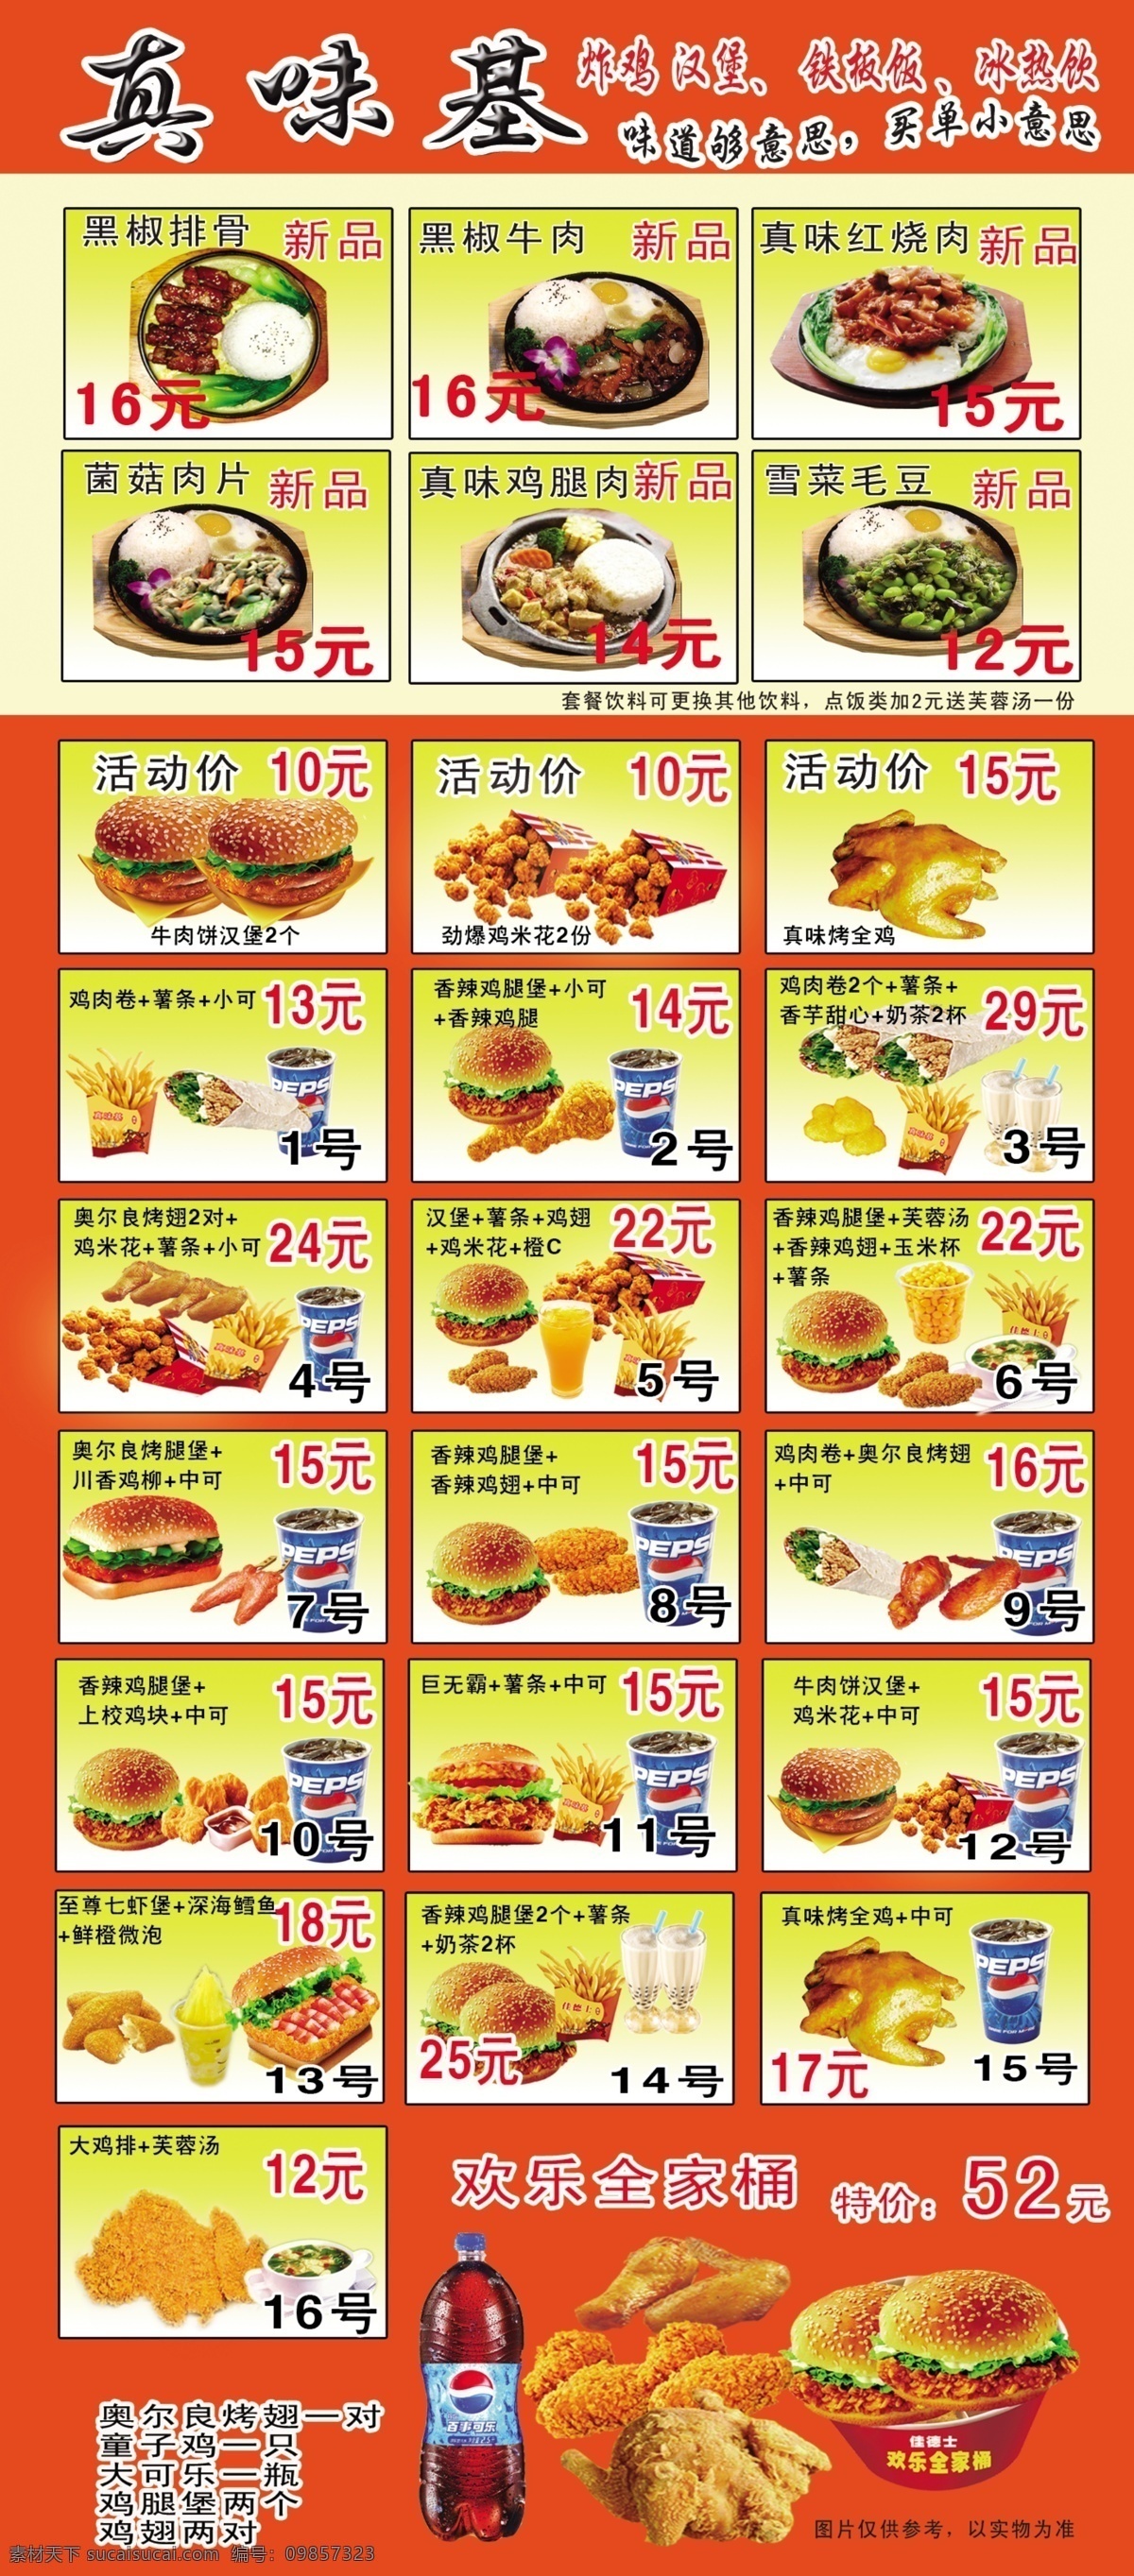 汉堡宣传单 汉堡 汉堡店 鸡腿堡 牛肉煲 dm宣传单 广告设计模板 源文件